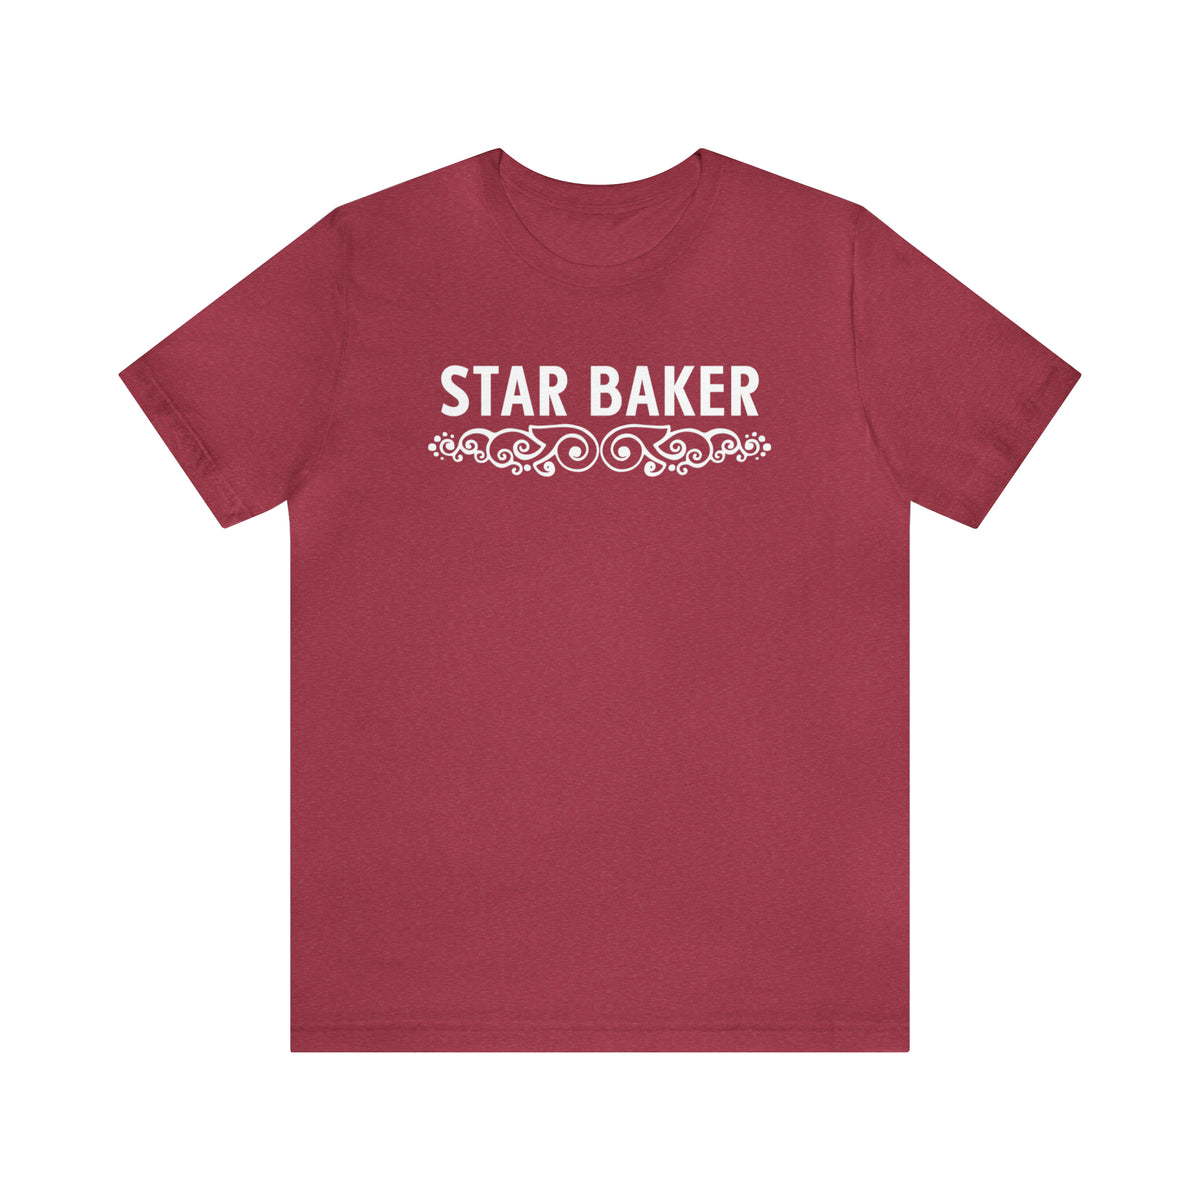 Star Baker British Baking Shirt | Baker Gifts | Unisex Jersey T-shirt